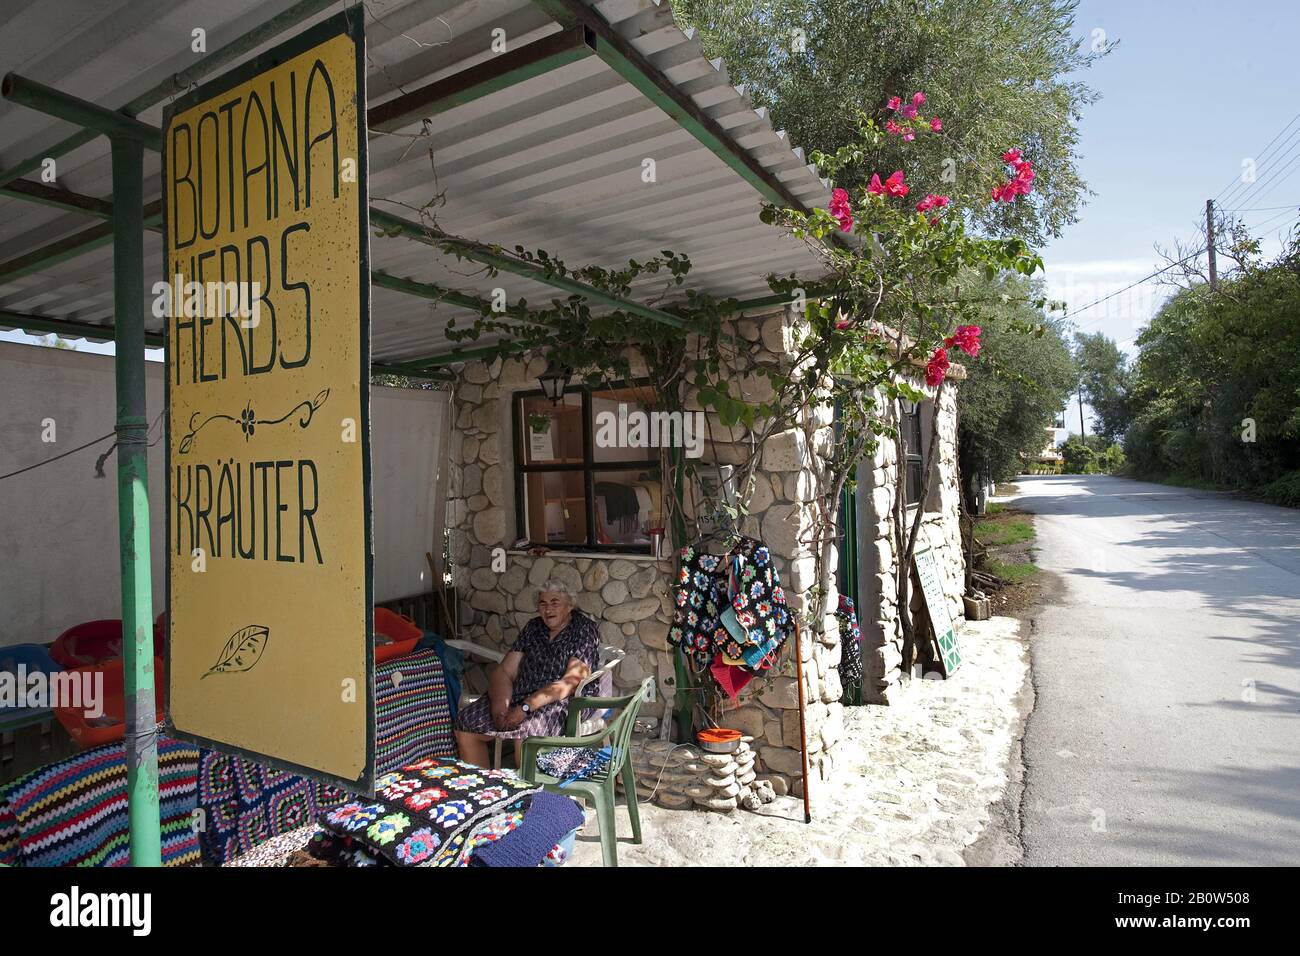 La vieille femme grecque vend des herbes et des souvenirs faits de lui-même, Limni Keriou, île de Zakynthos, Grèce Banque D'Images